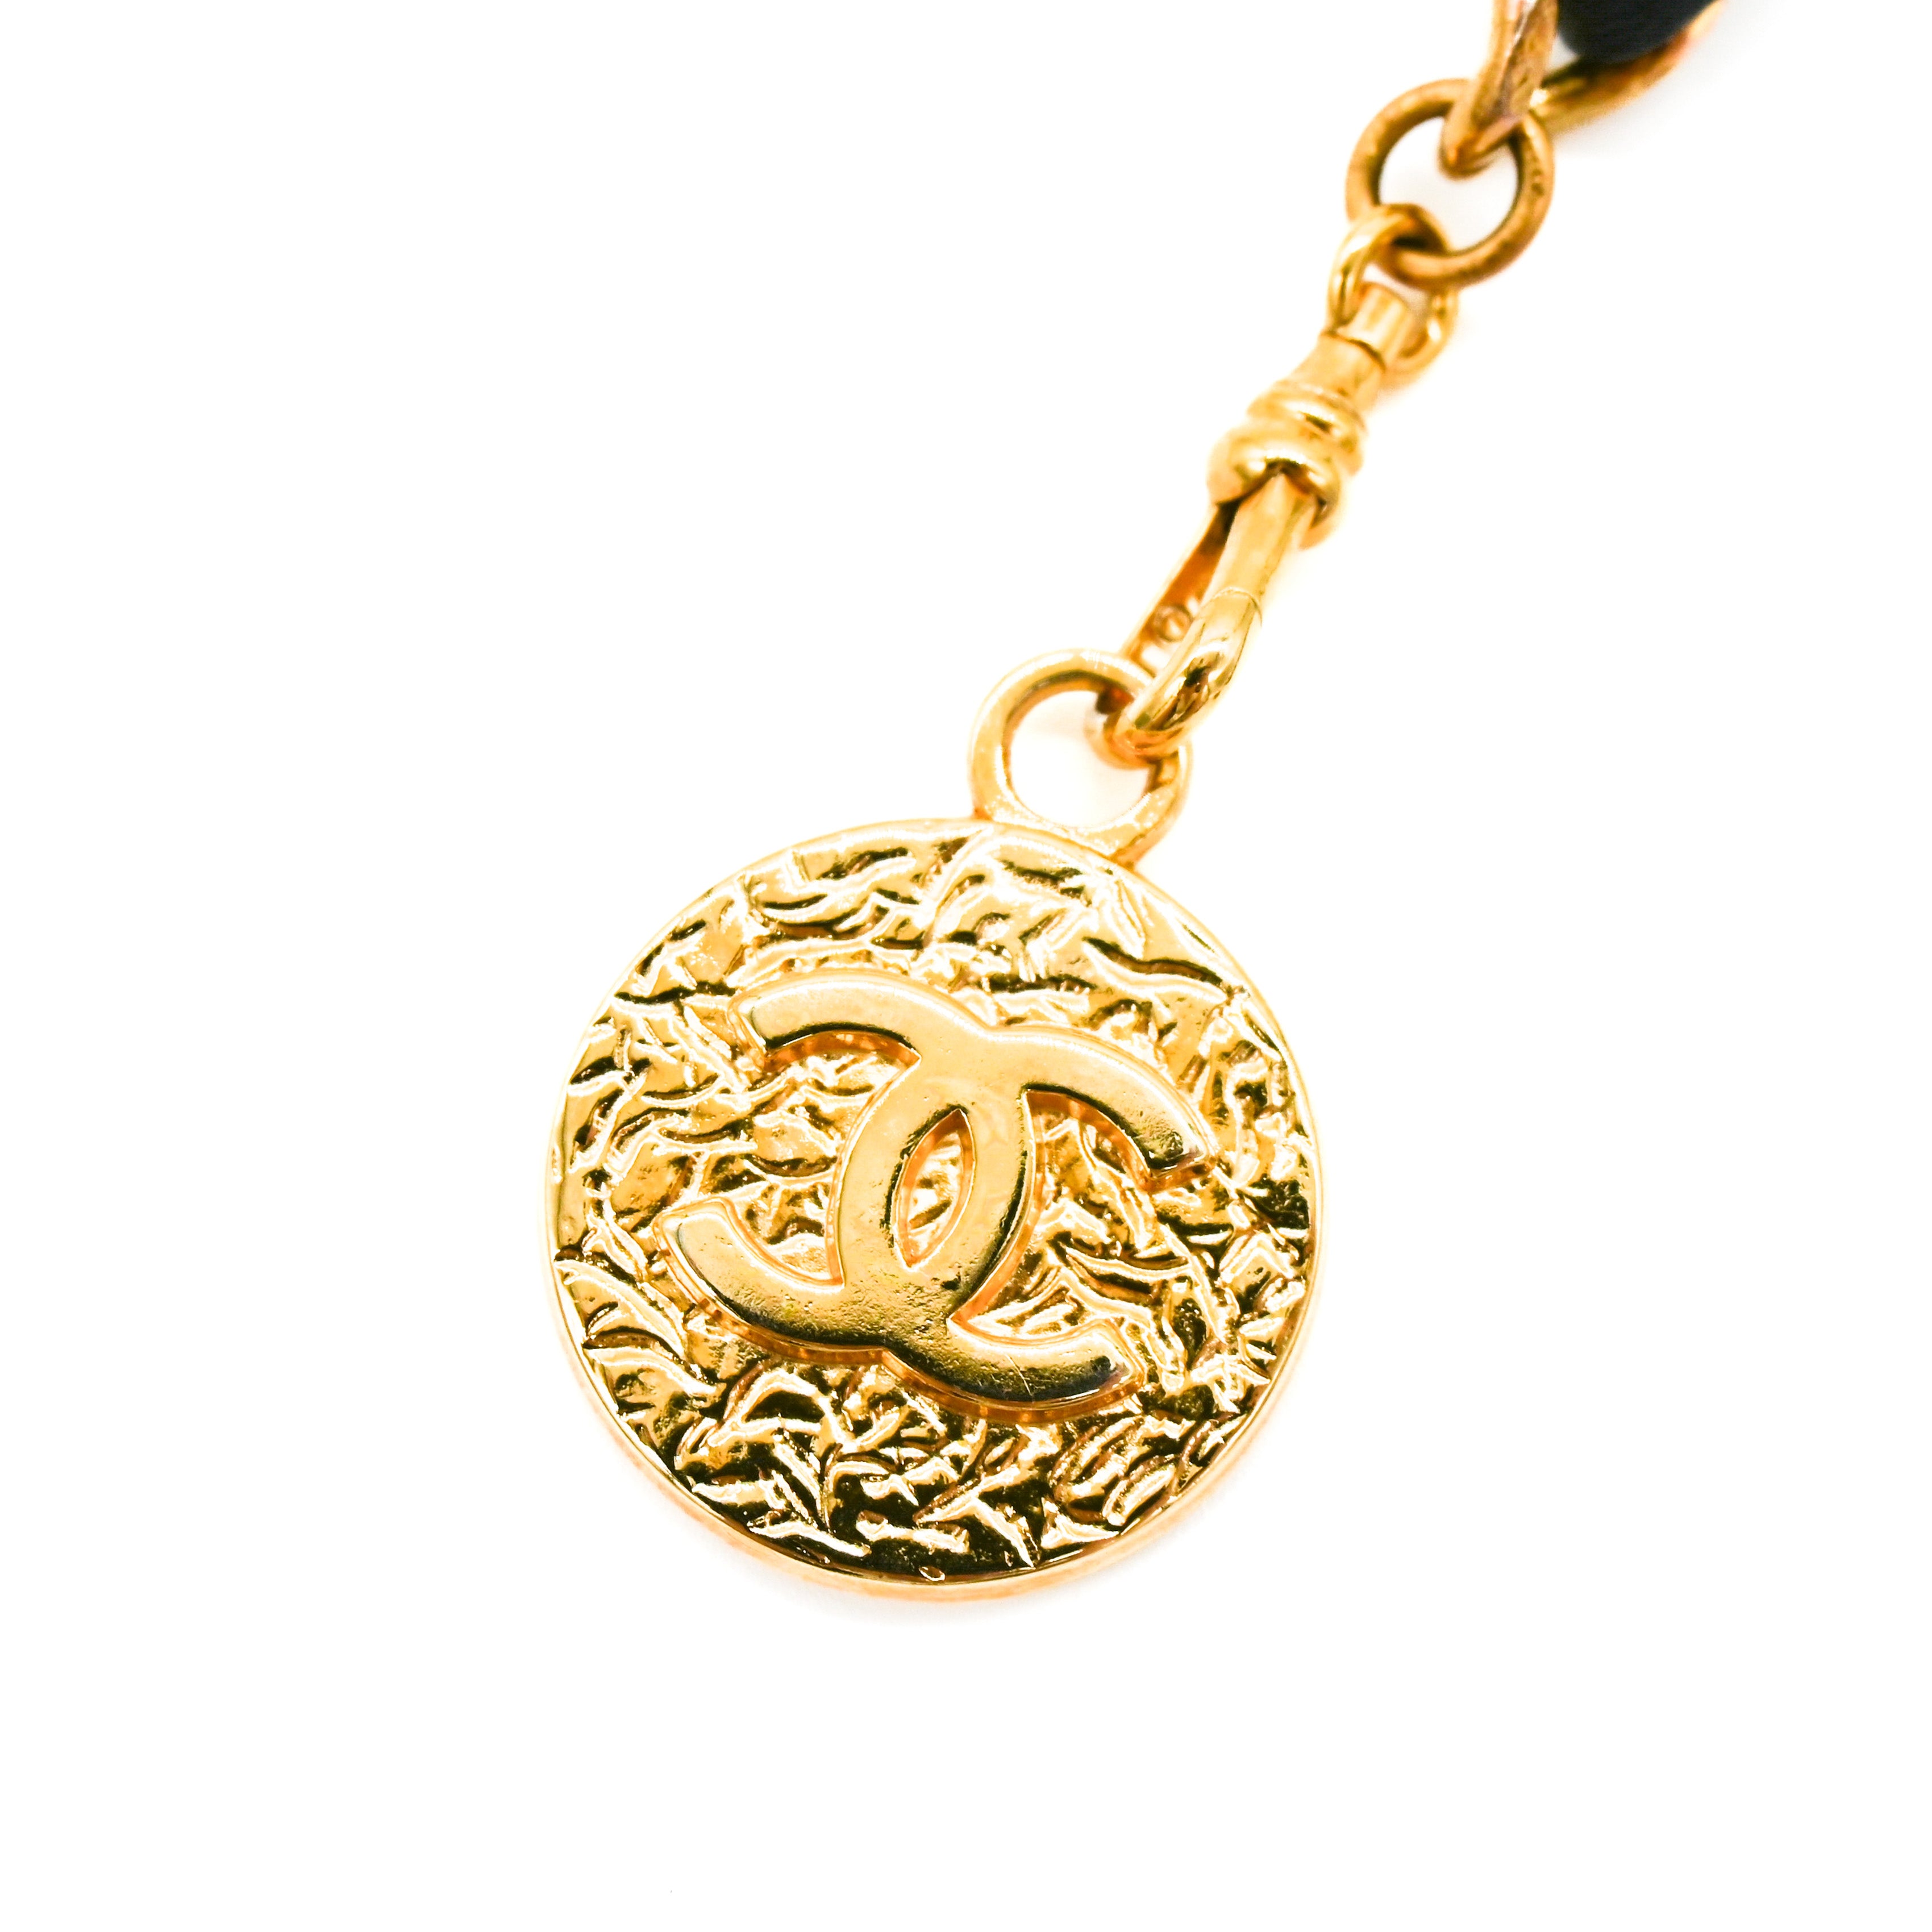 CHANEL Chanel 1982 Vintage Medallion Black Leather Chain Link Belt - Vault 55